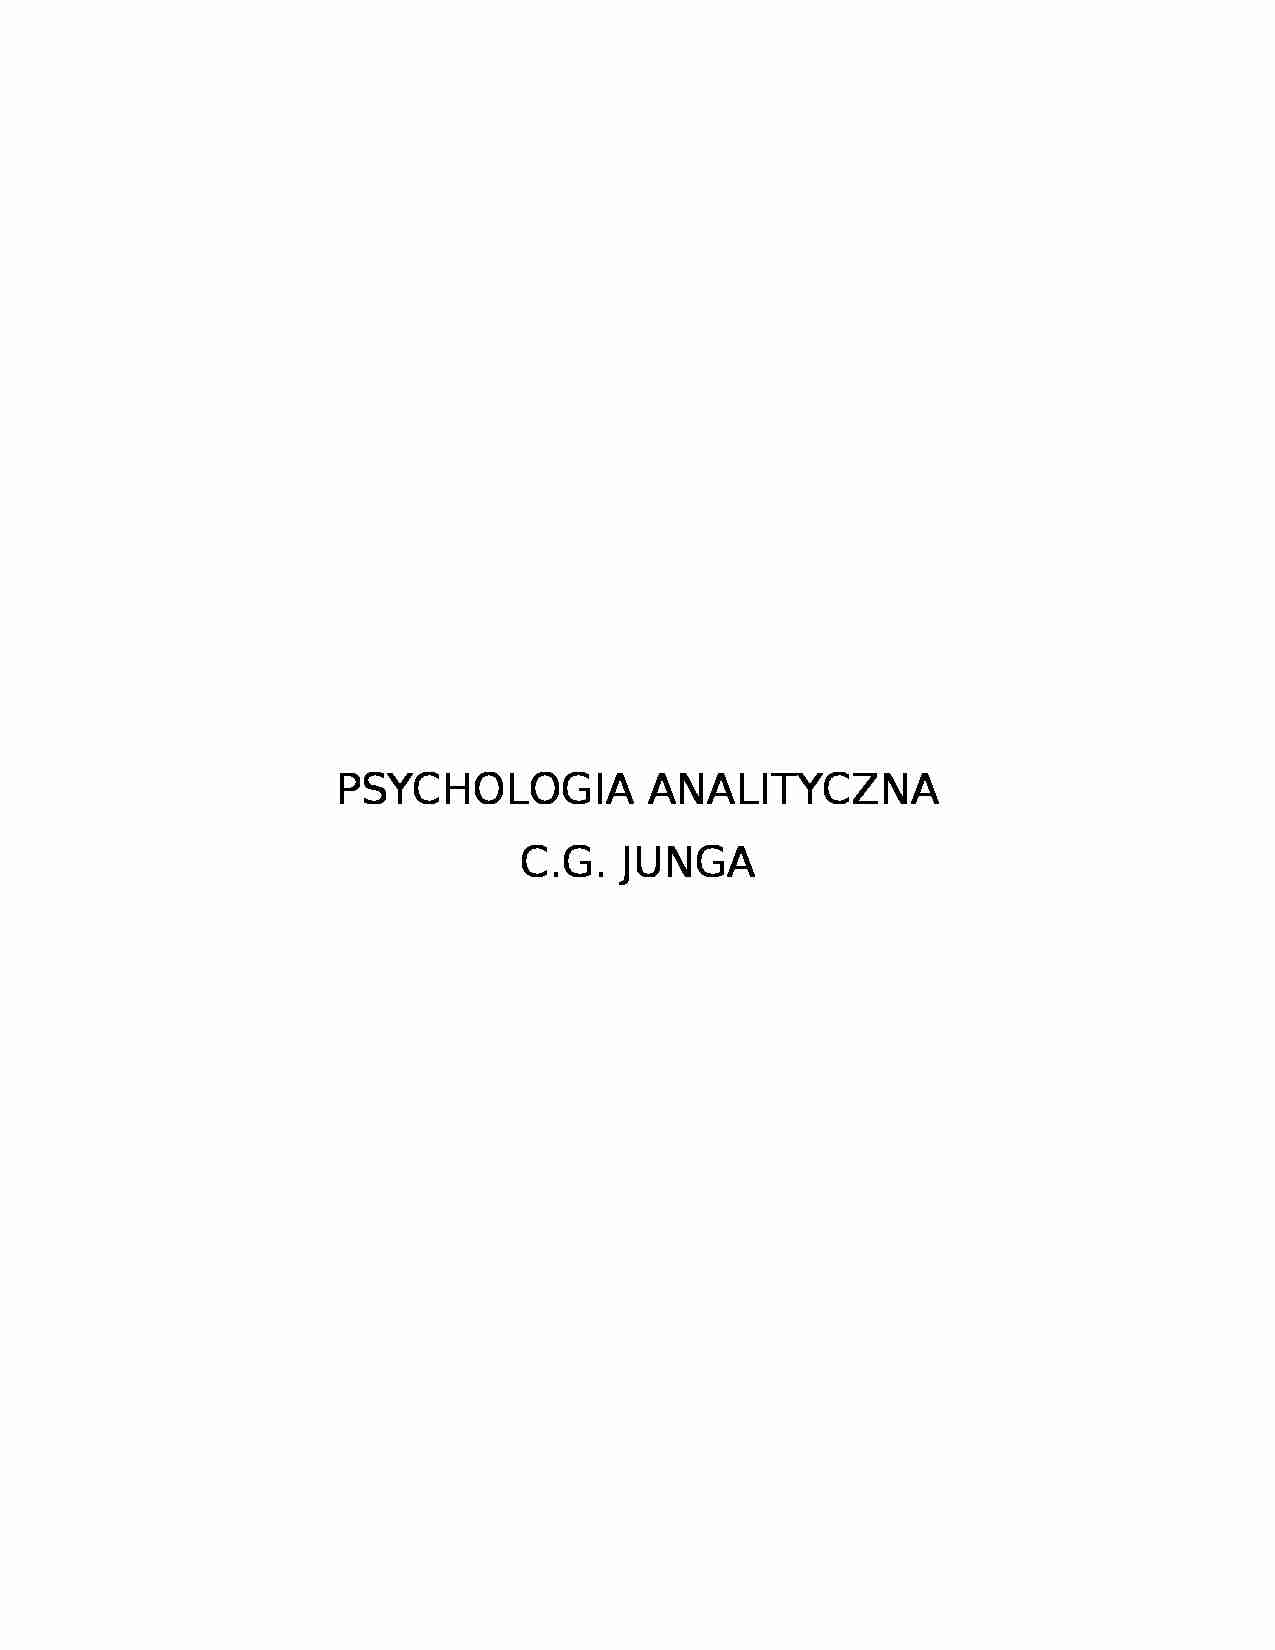 Psychologia analityczna - Osobowość - Jung - strona 1